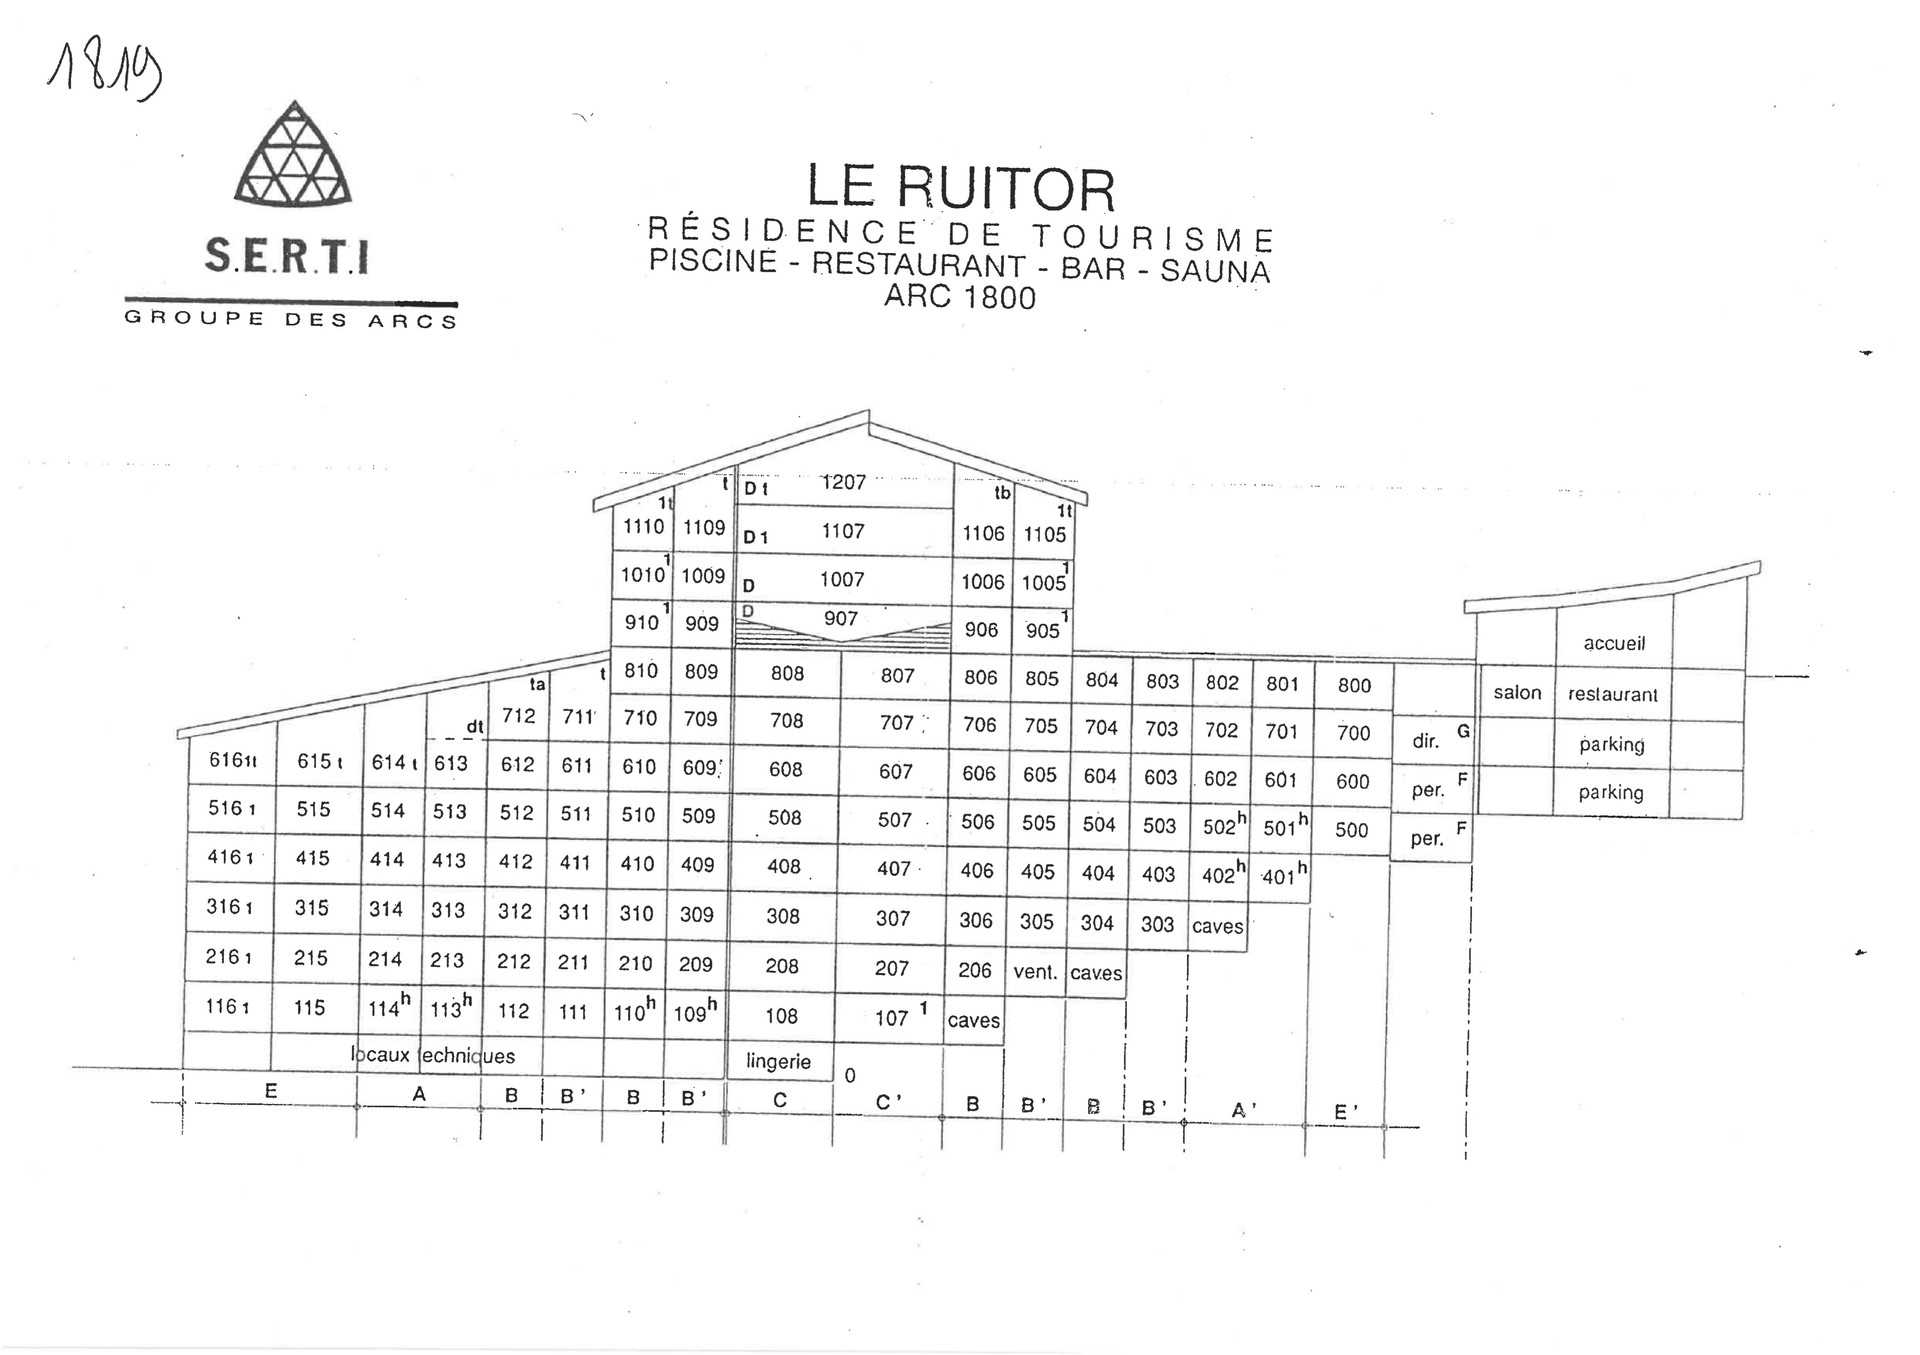 Appartements RUITOR ARC 1800 - Les Arcs 1800